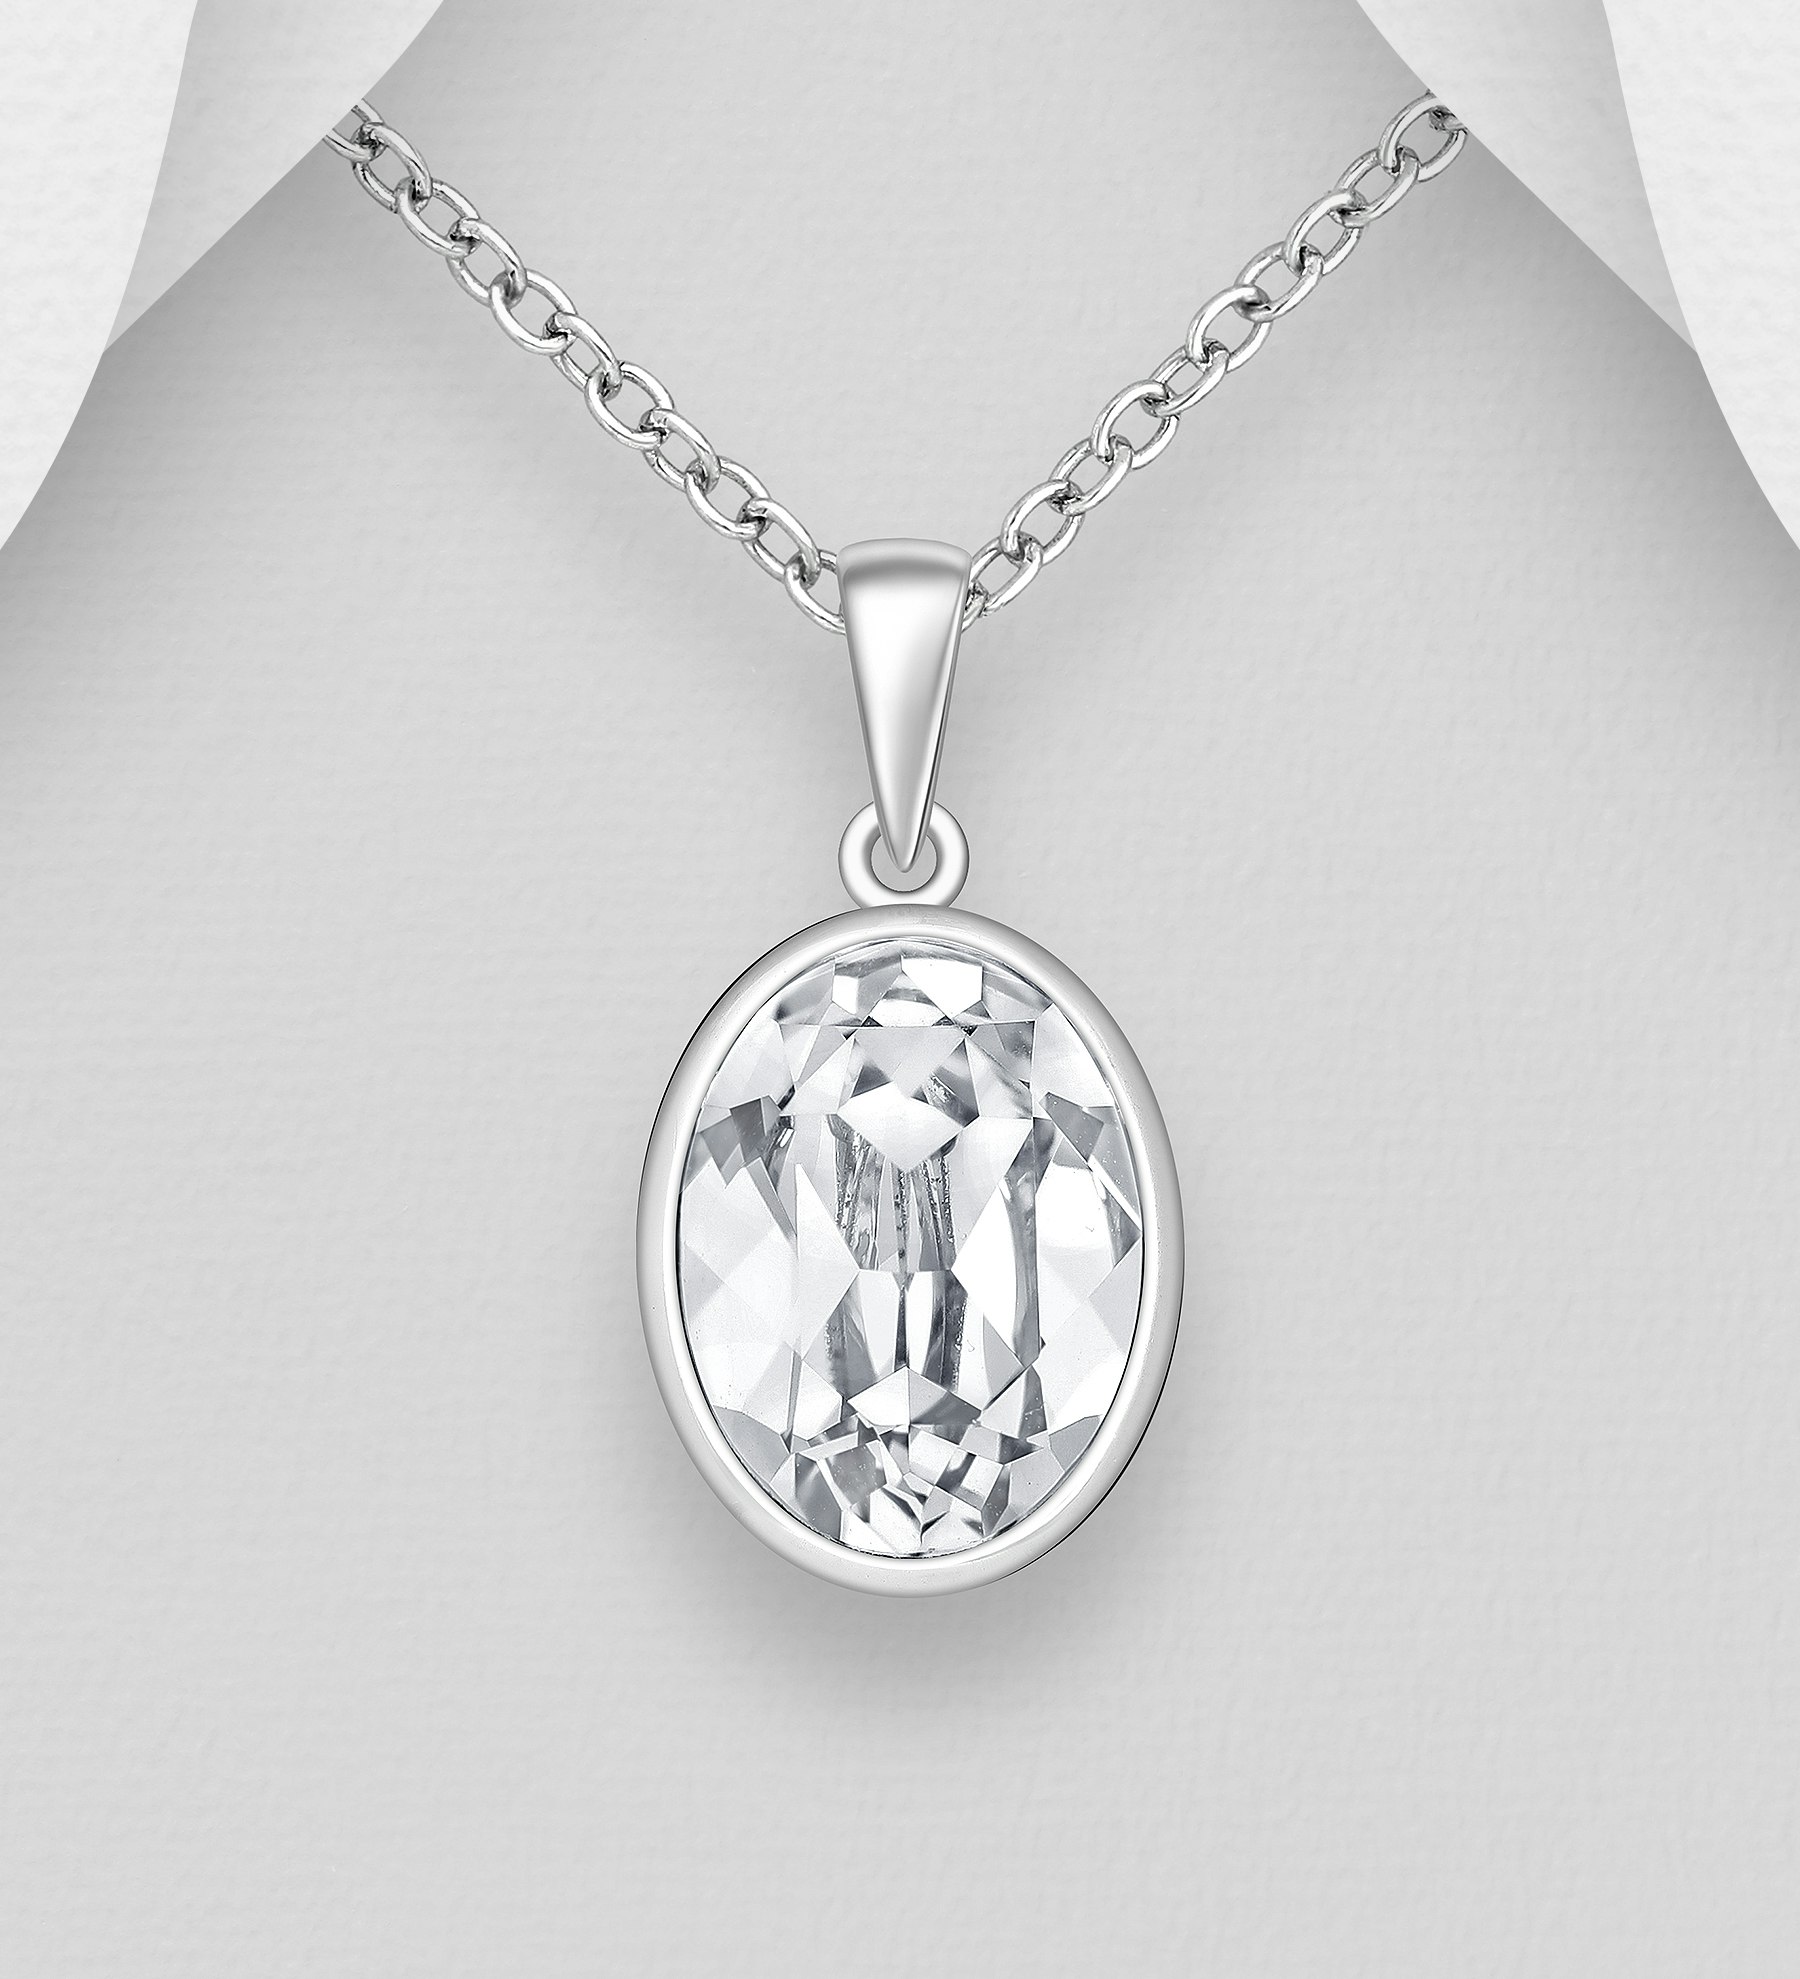 Silverhalsband Oval glittrande kristall - elegant halsband till tjej/ dam i äkta 925 sterling silver